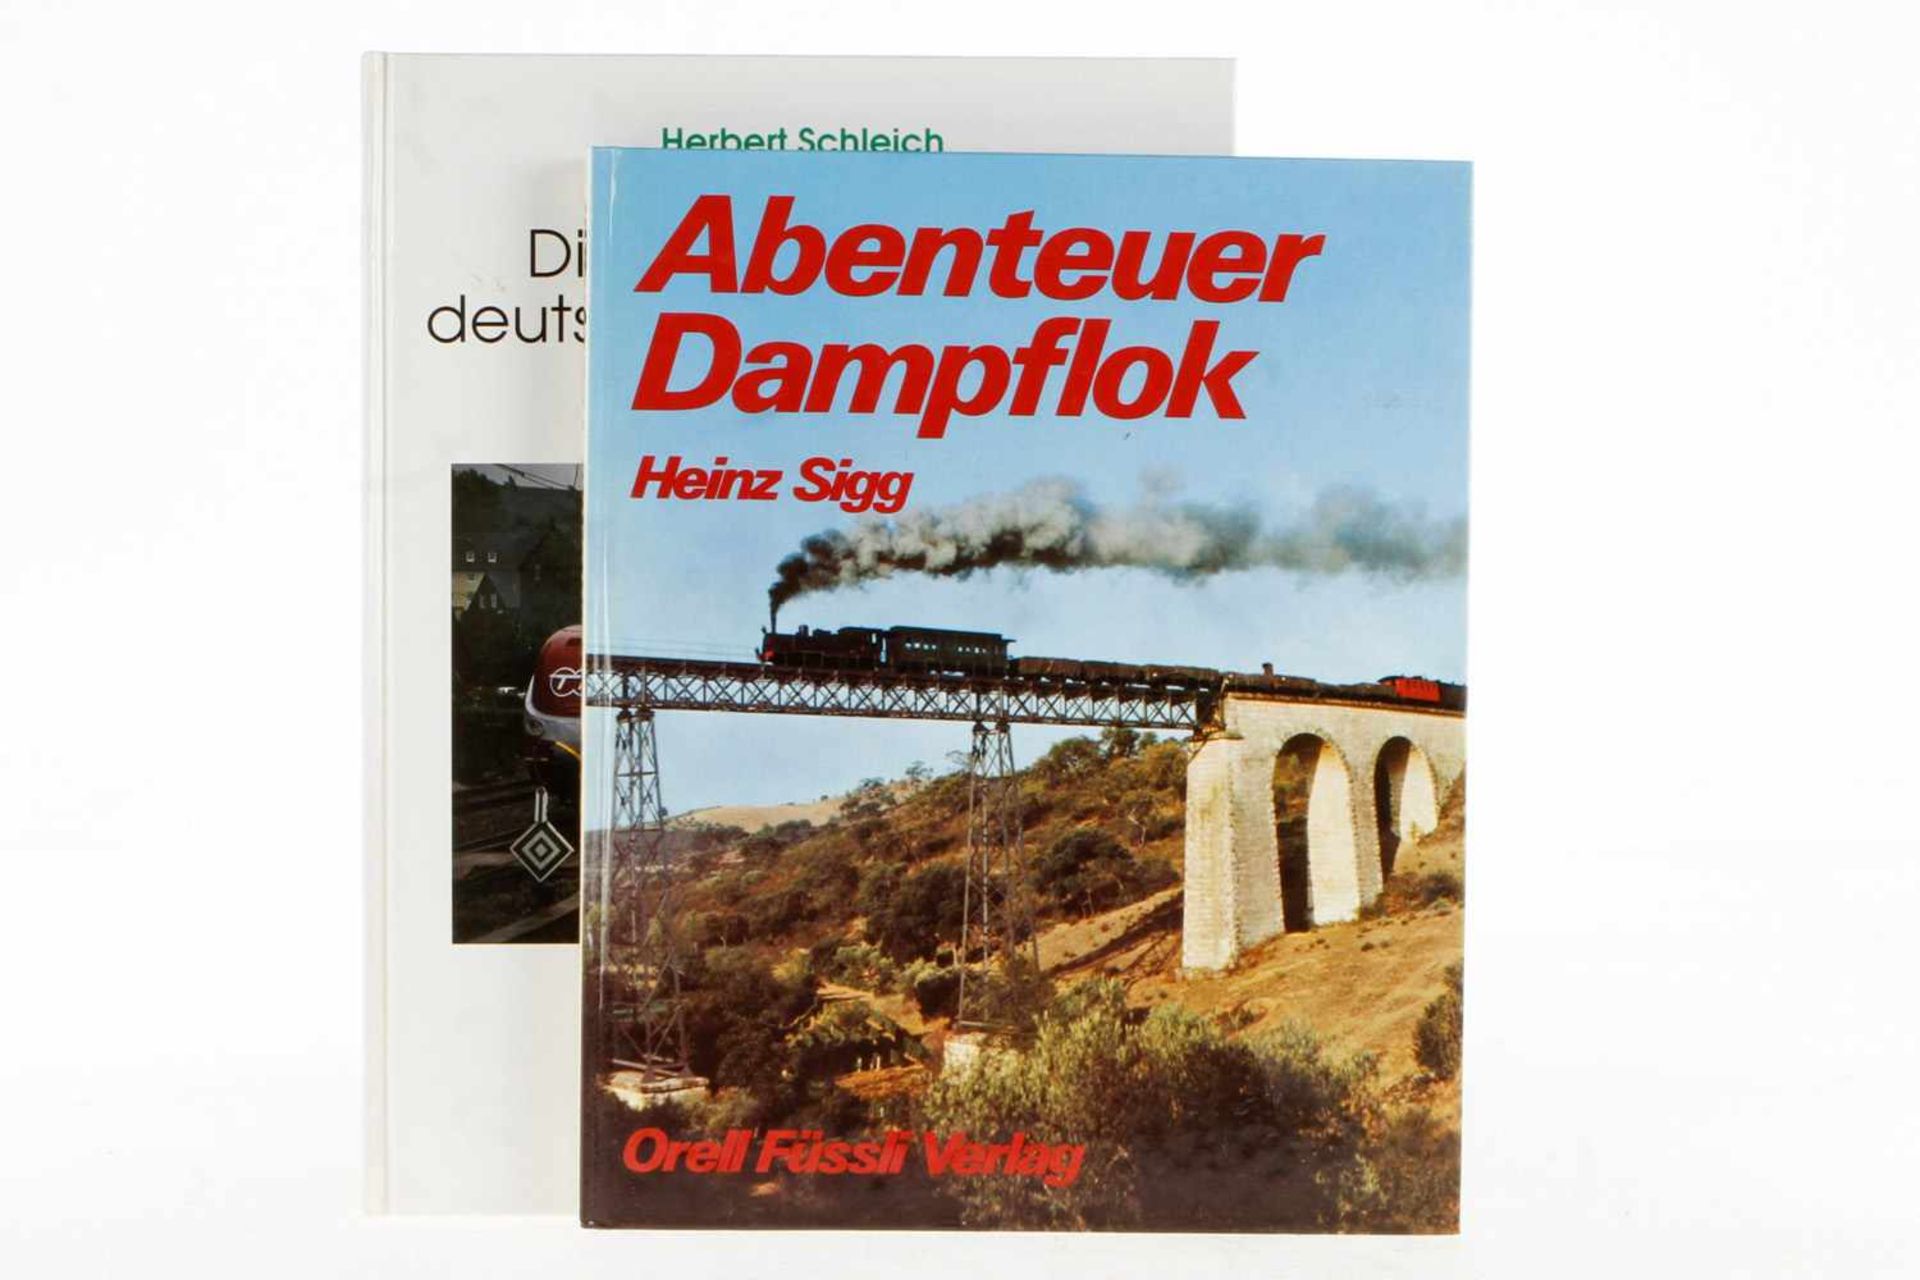 2 Bücher "Abenteuer Dampflok" und "Die berühmtesten deutschen Lokomotiven aller Zeiten",